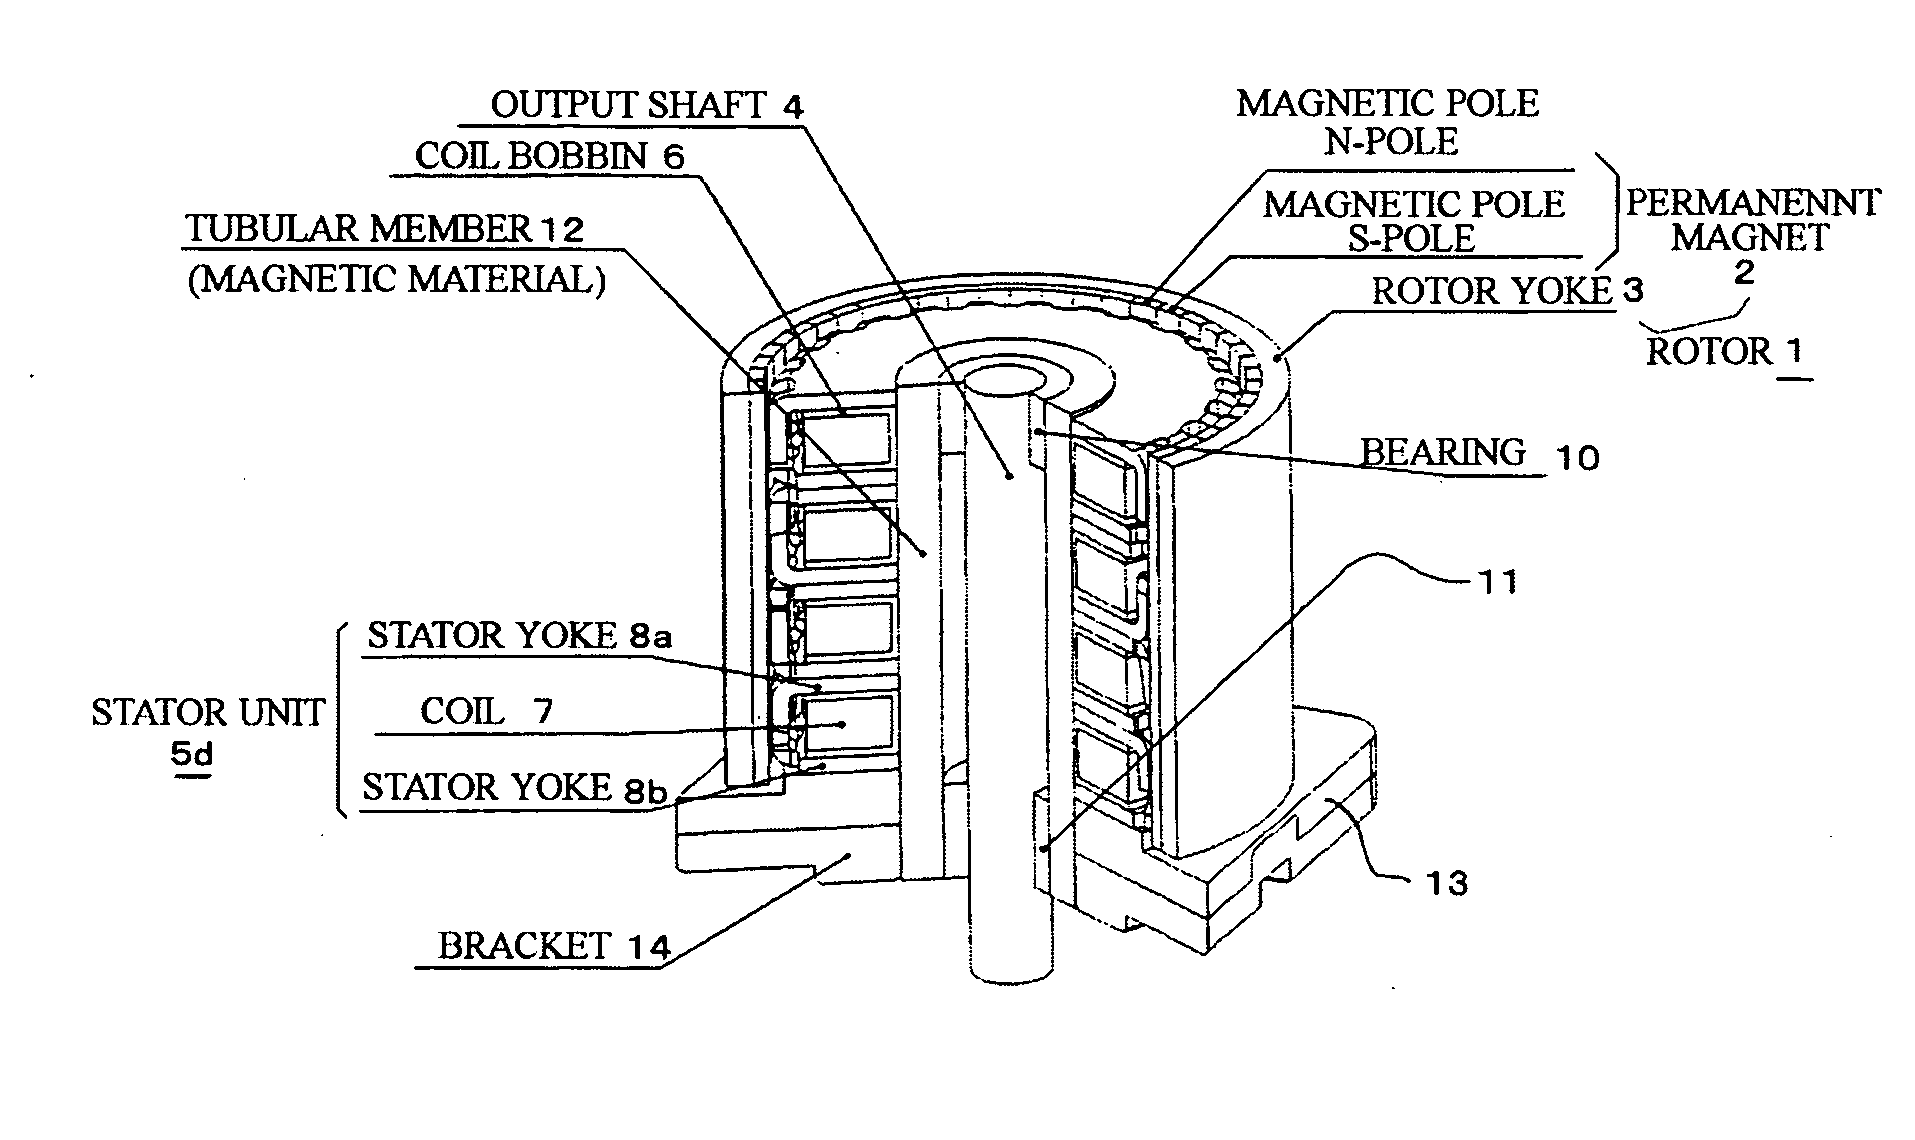 Permanent magnet type rotary machine